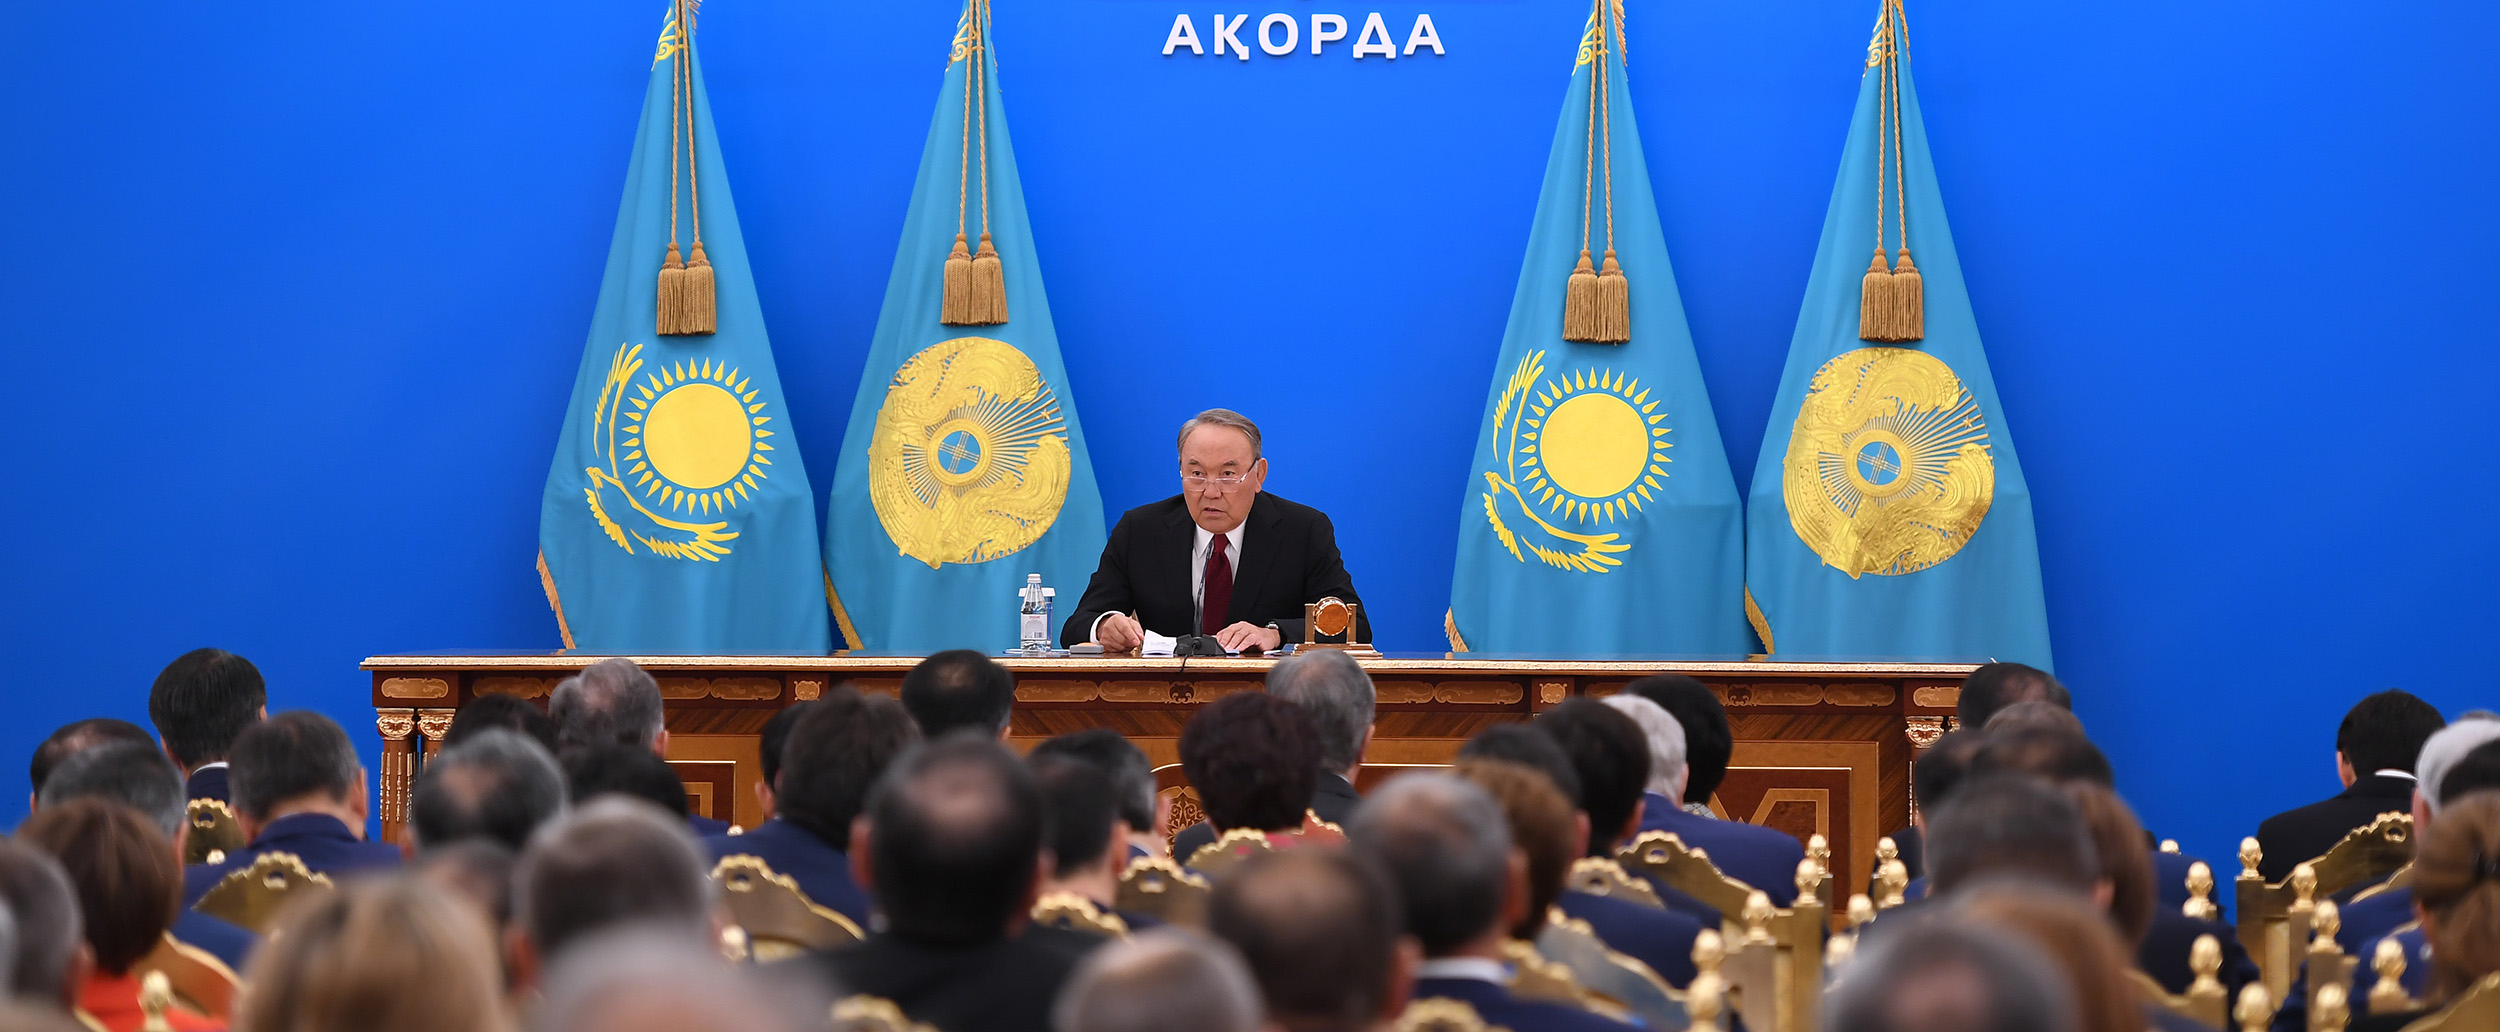 Полный текст Послания народу Казахстана